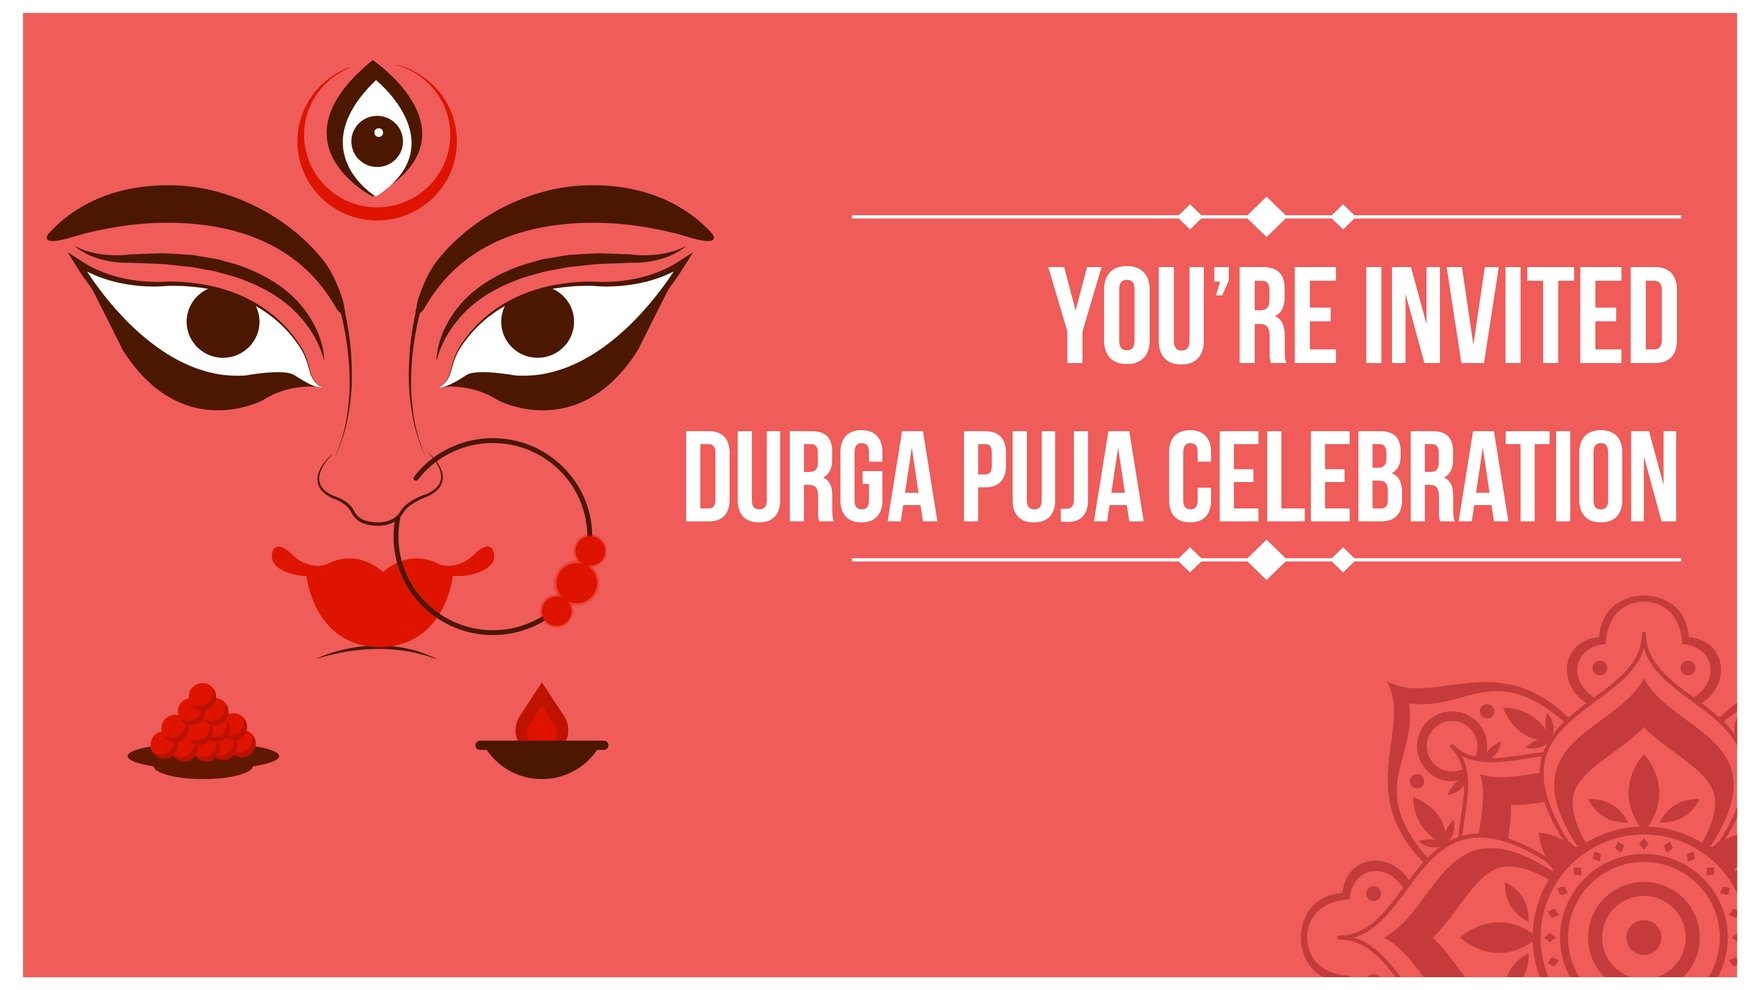 Hãy chiêm ngưỡng hình nền lời mời Durga Puja đầy màu sắc và ấn tượng, mời gọi bạn đến tham dự lễ hội truyền thống của người Hindu tại Ấn Độ. Hãy cùng đắm mình vào không khí long trọng, đầy mê hoặc của ngày hội này.